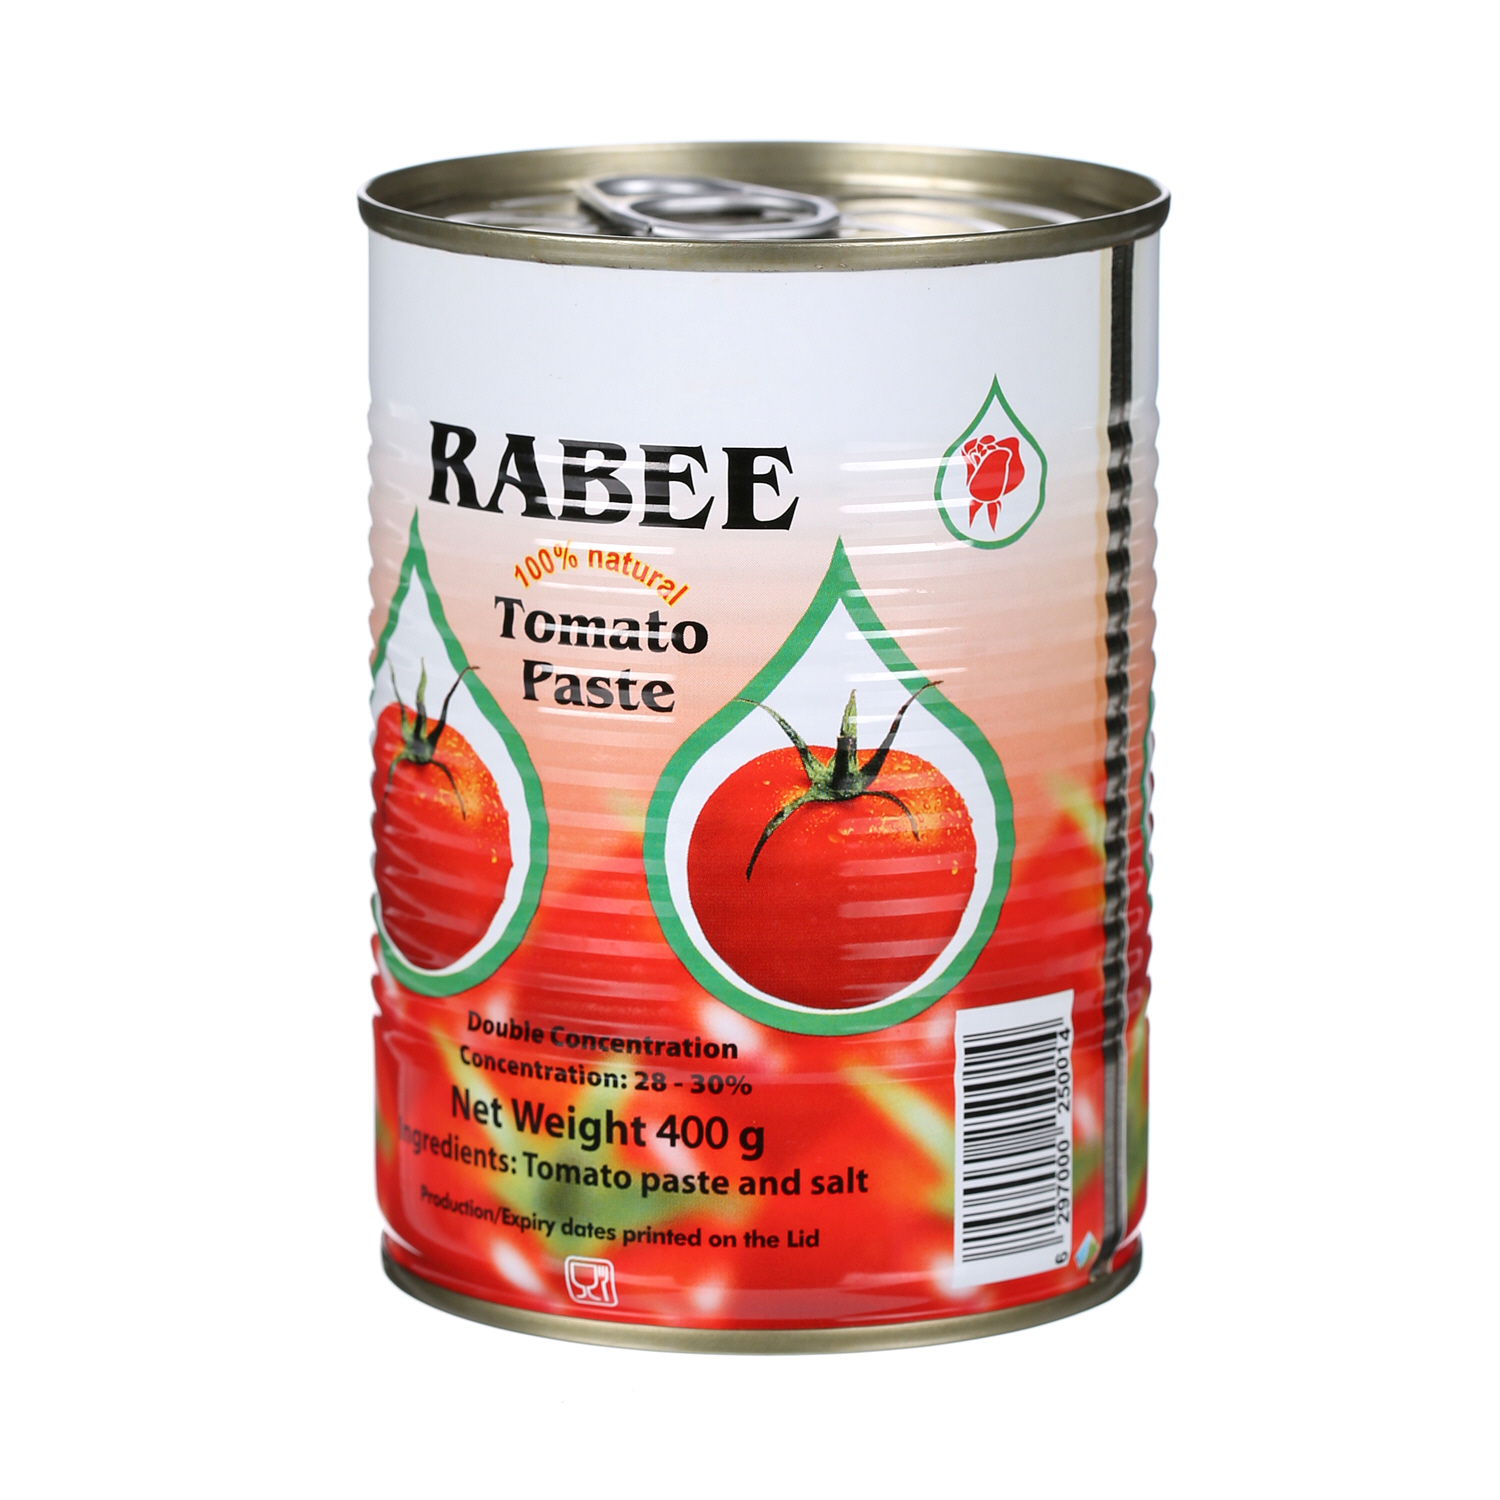 Rabee Tomato Paste 400 g